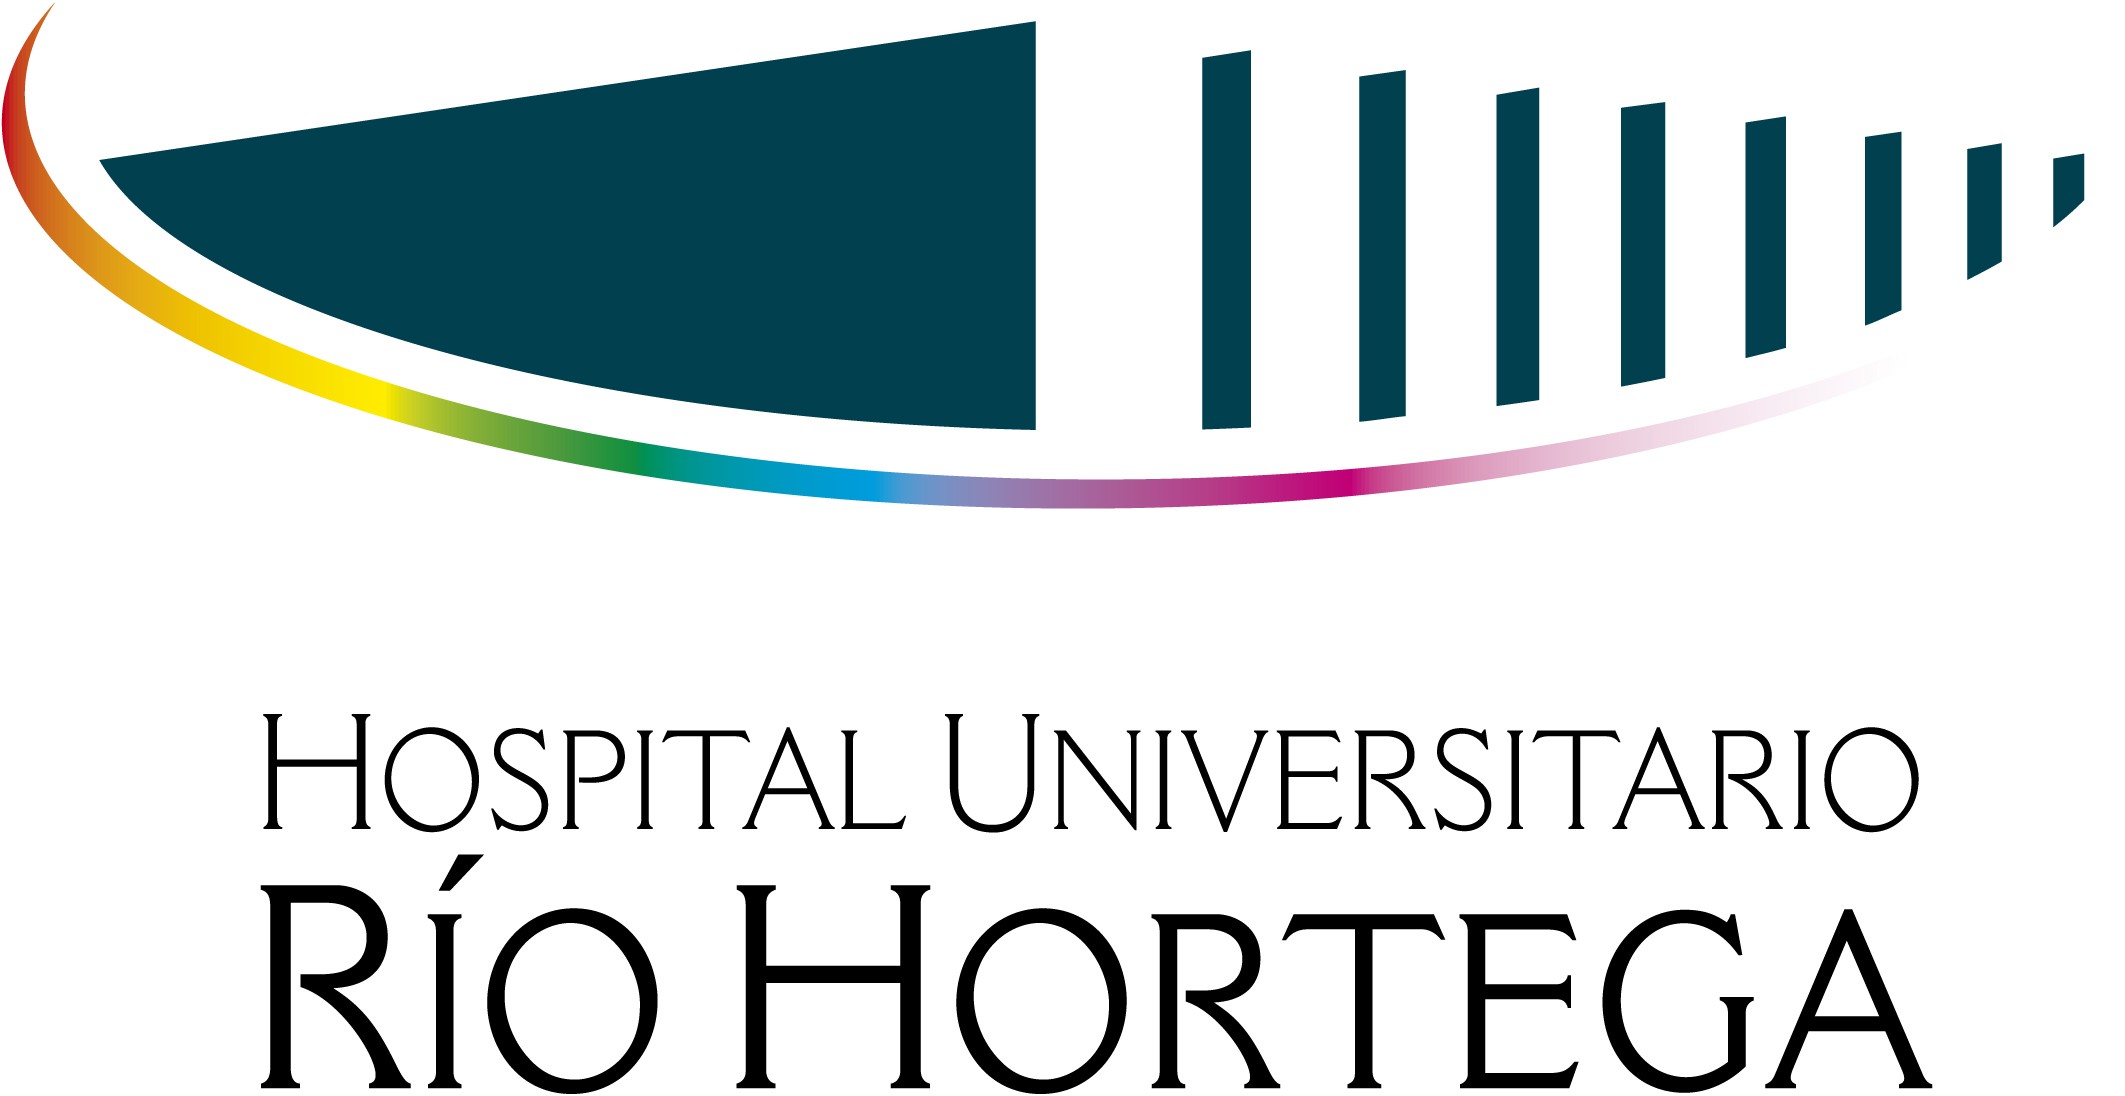 Hospital Universitario Rio Hortega